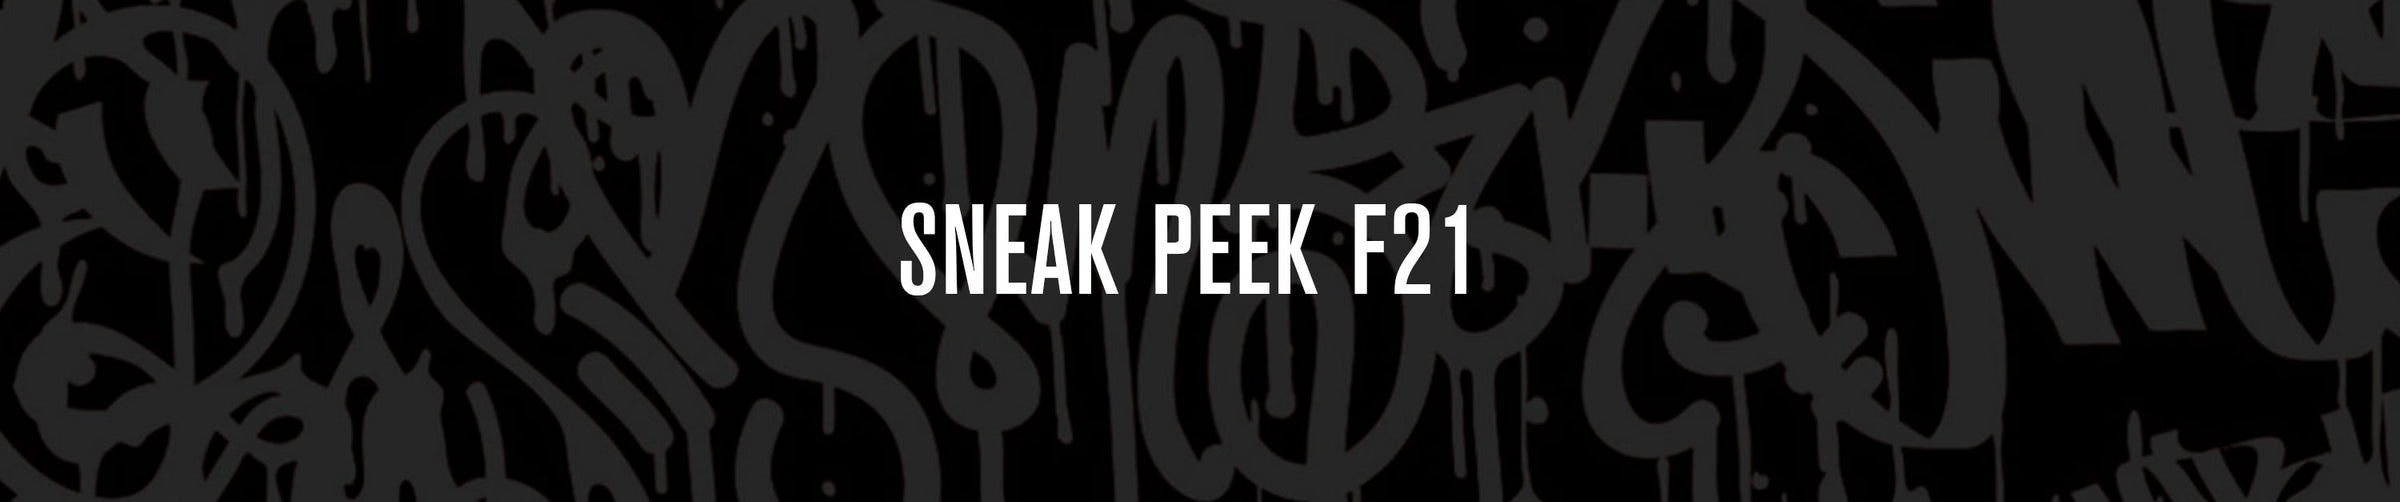 Sneak Peek F21